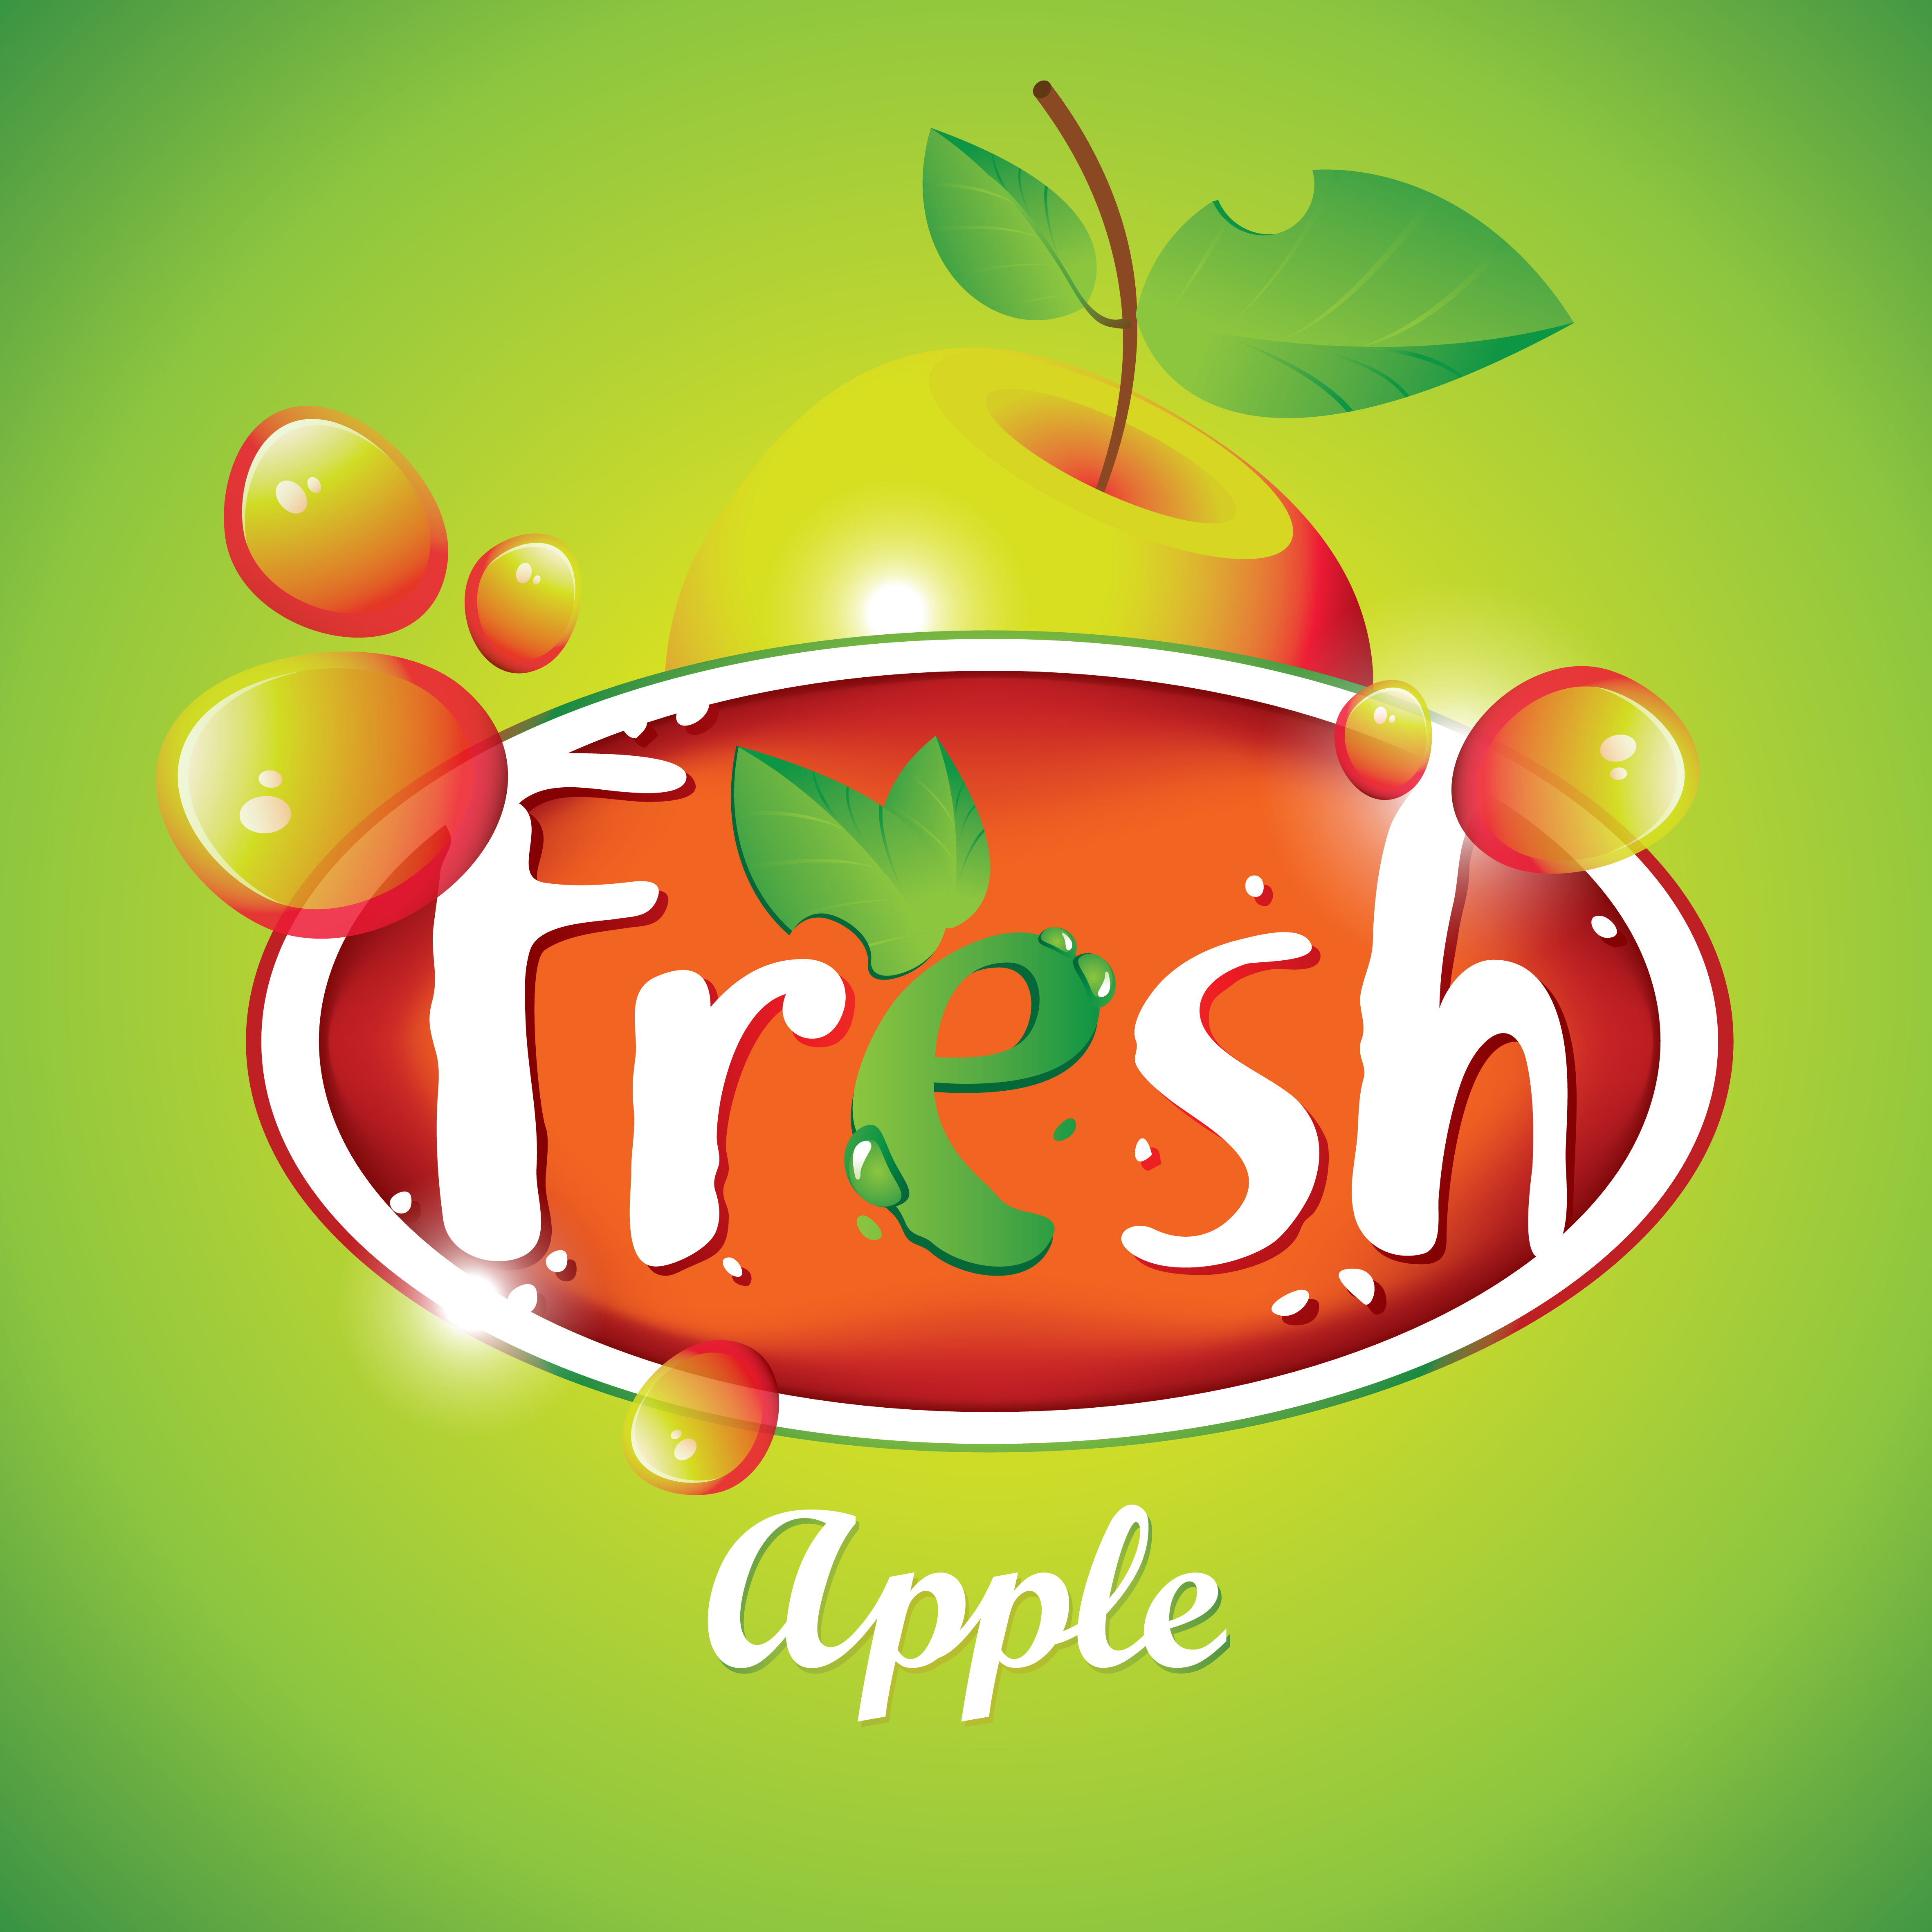 Fresh juice poster design vectors material 04 poster material juice fresh design   